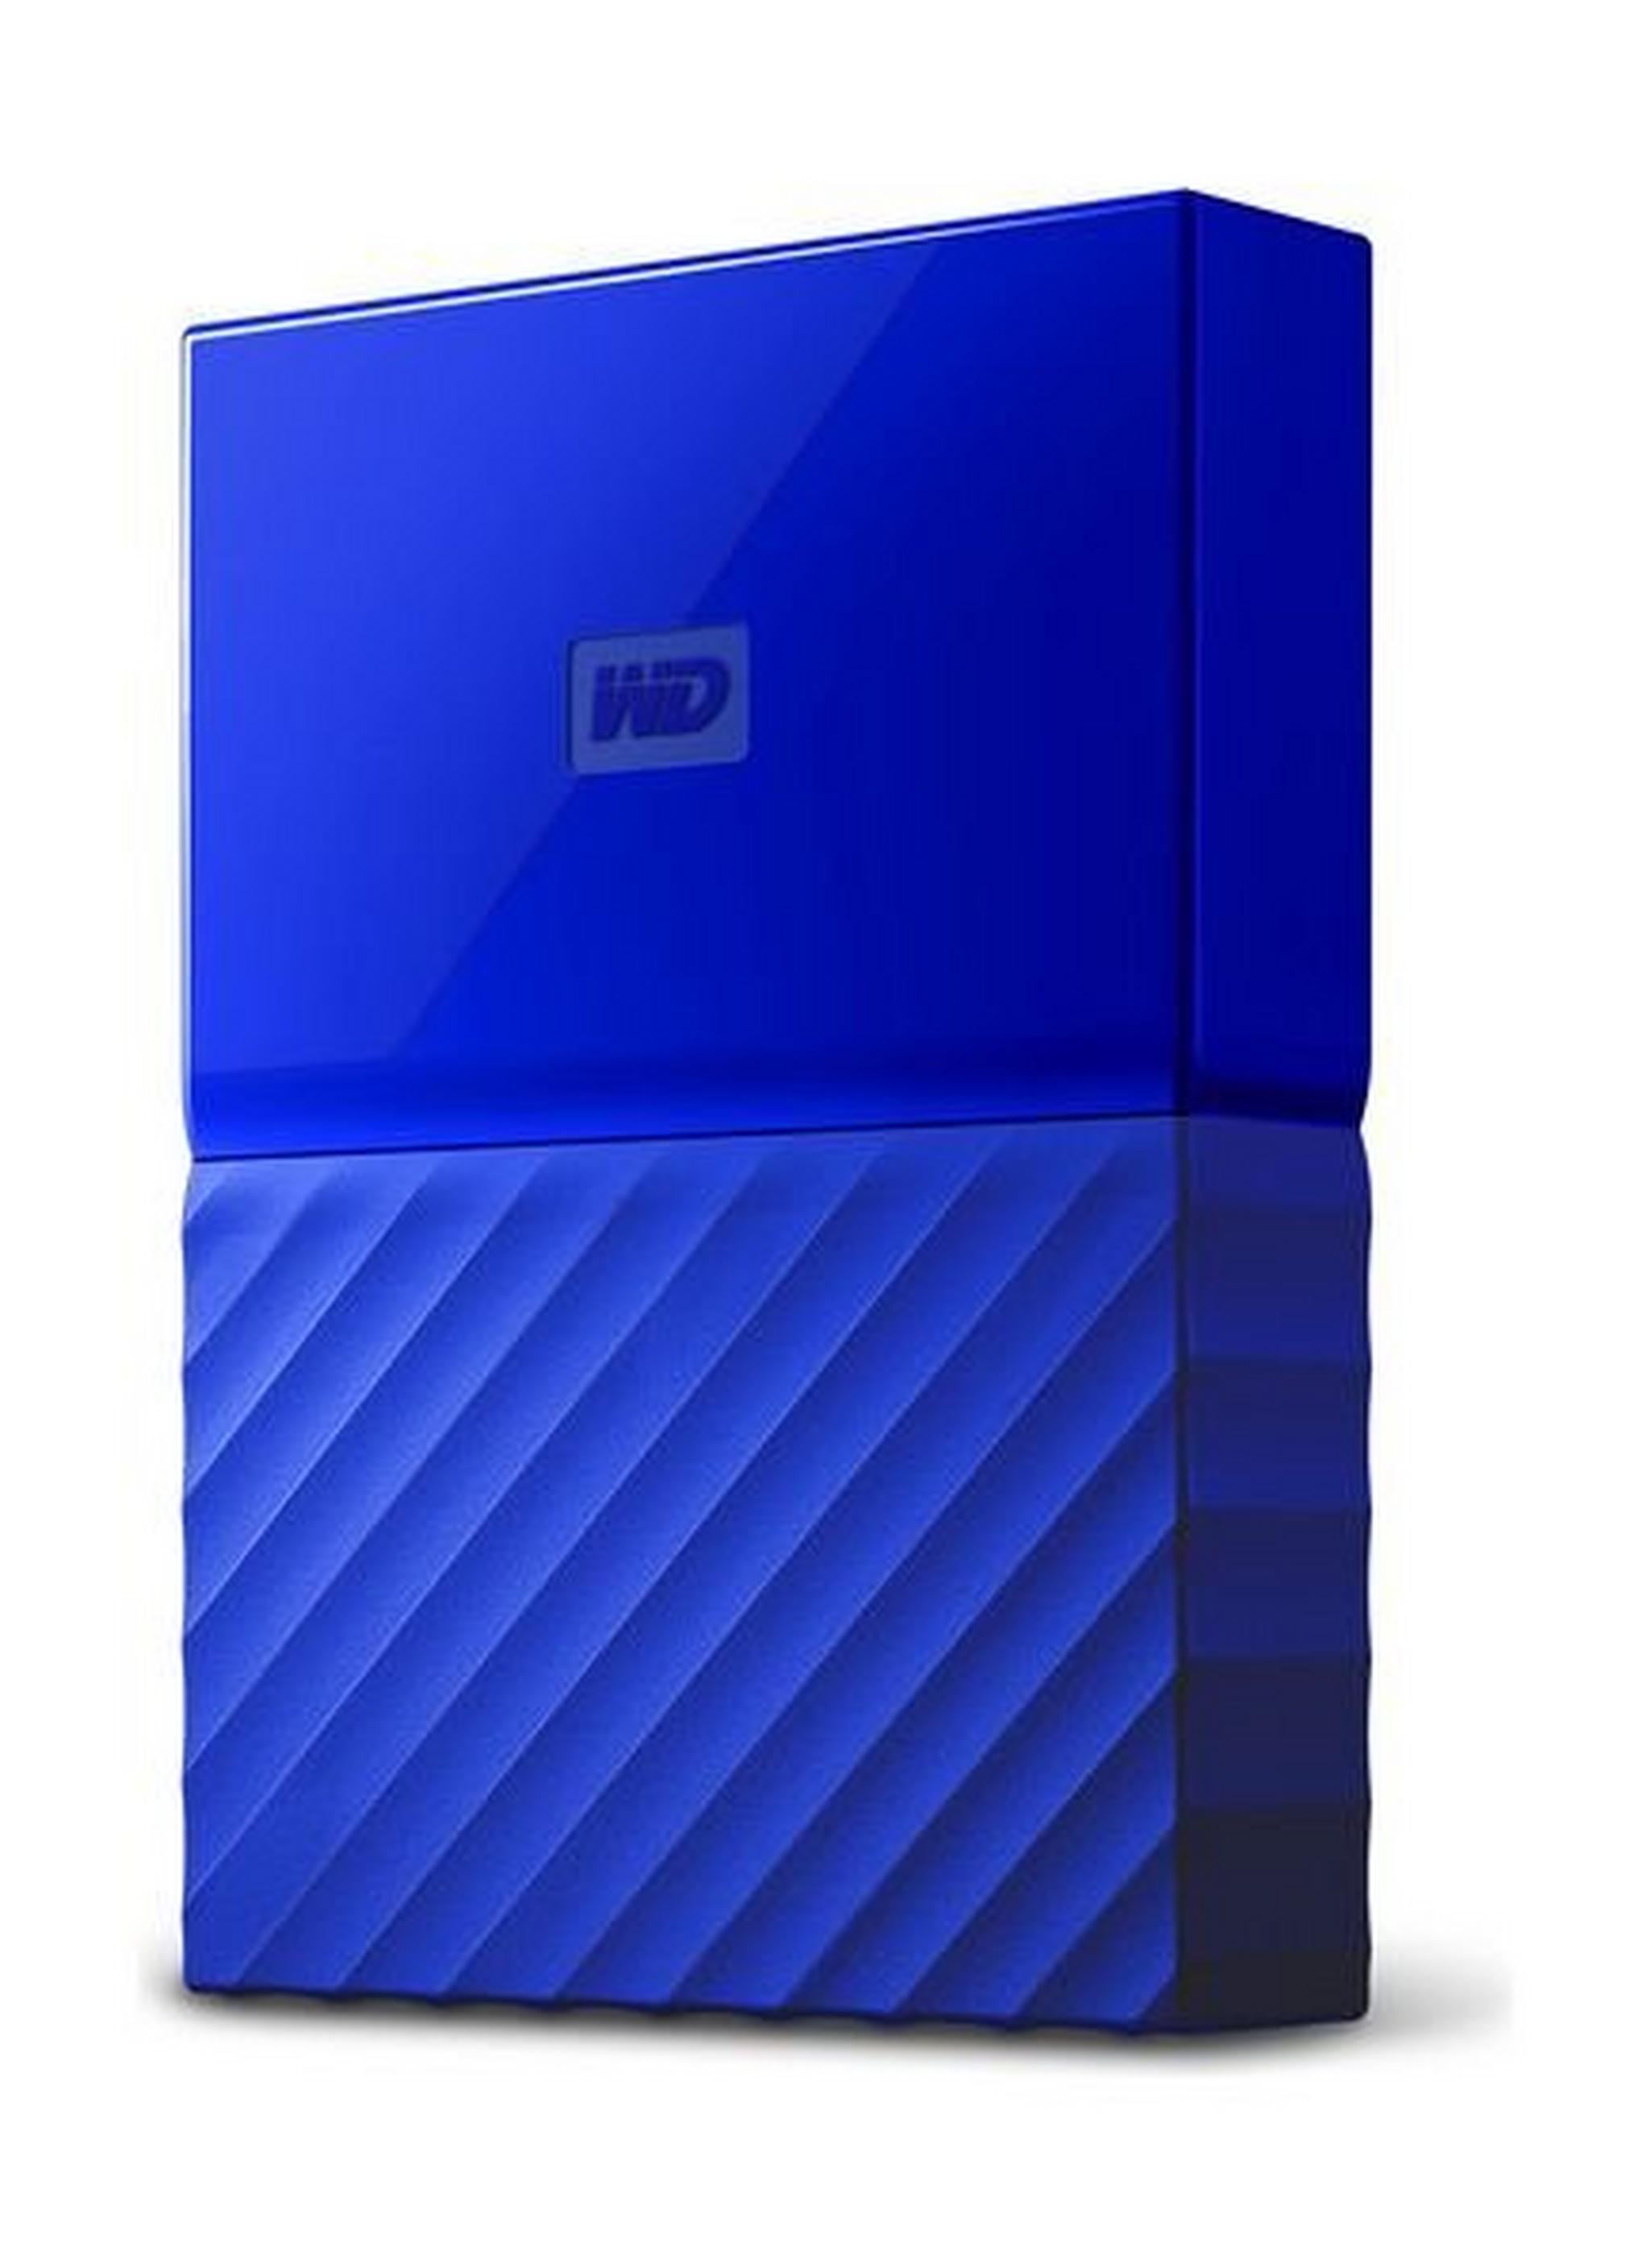 WD 4TB My Passport USB 3.0 External Hard Drive - Blue